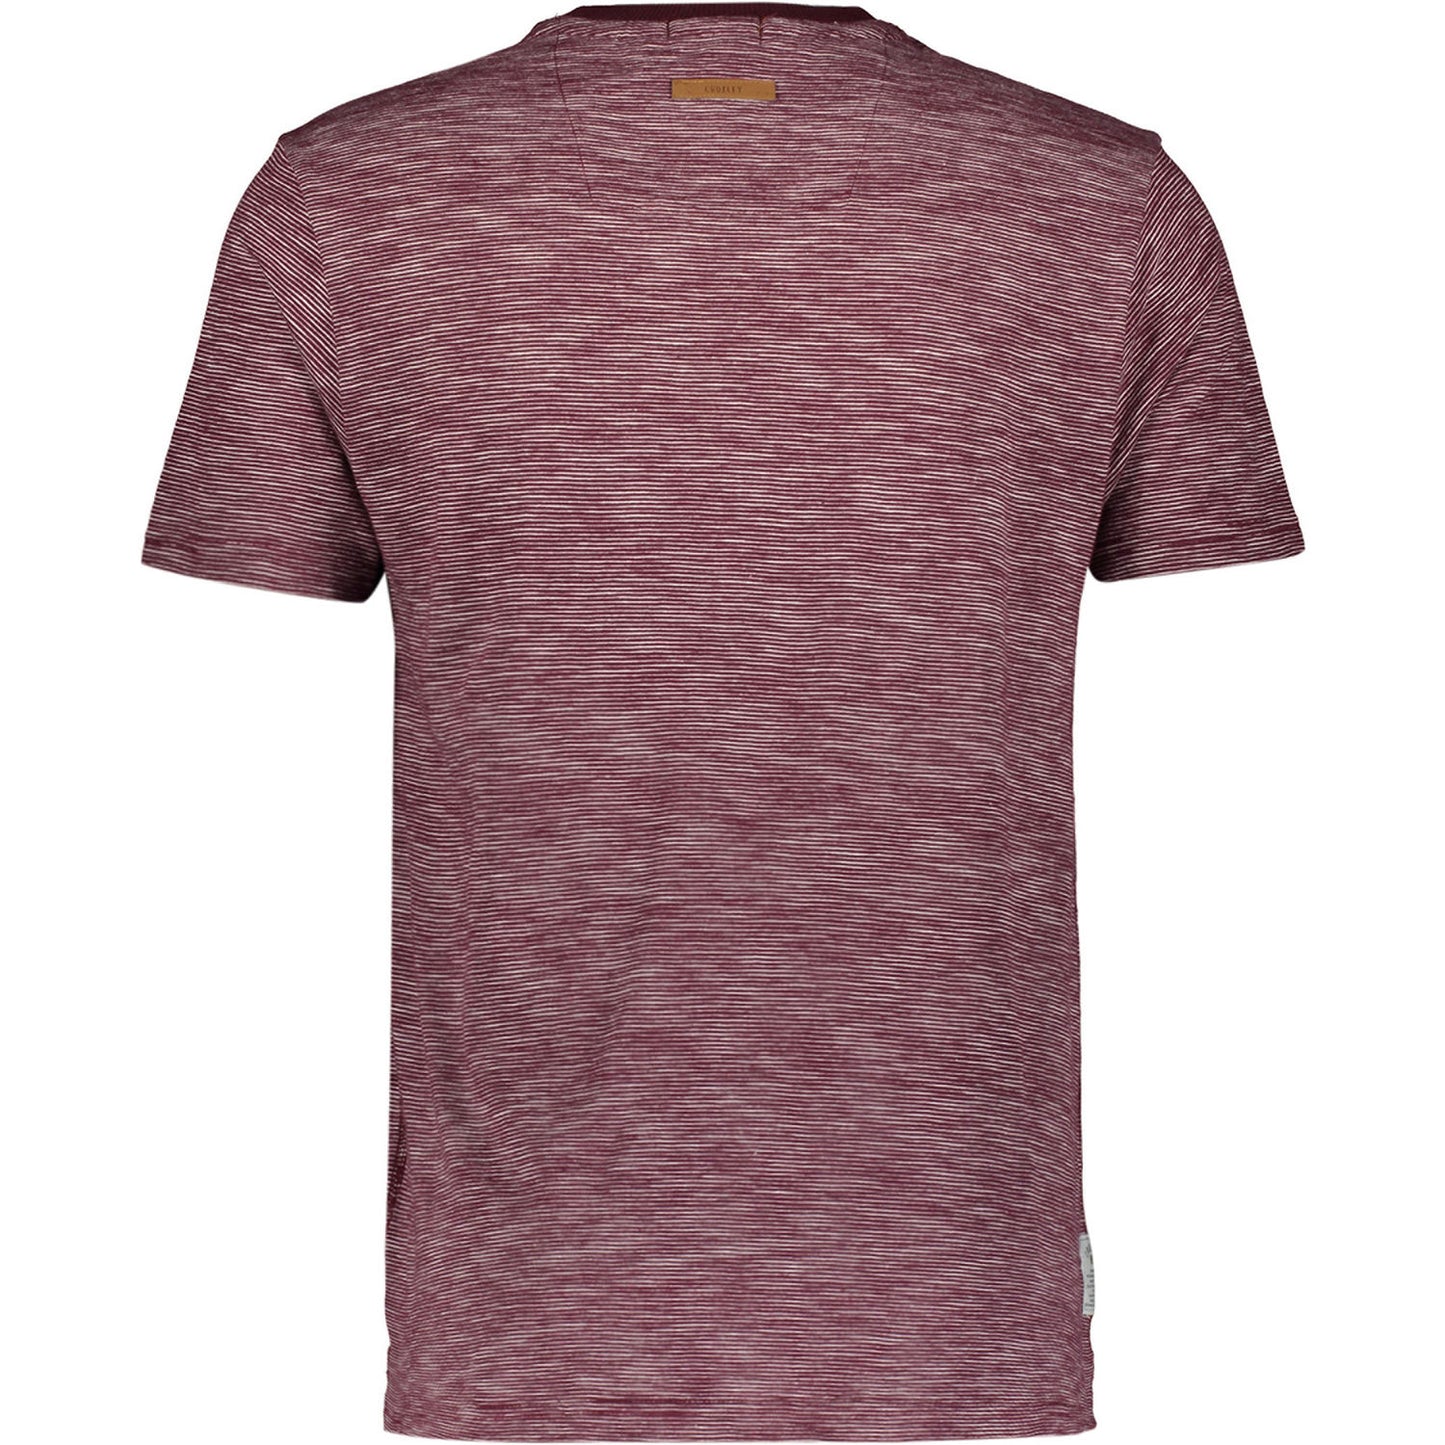 Croxley - Ronnie T-Shirt - LabelledUp.com